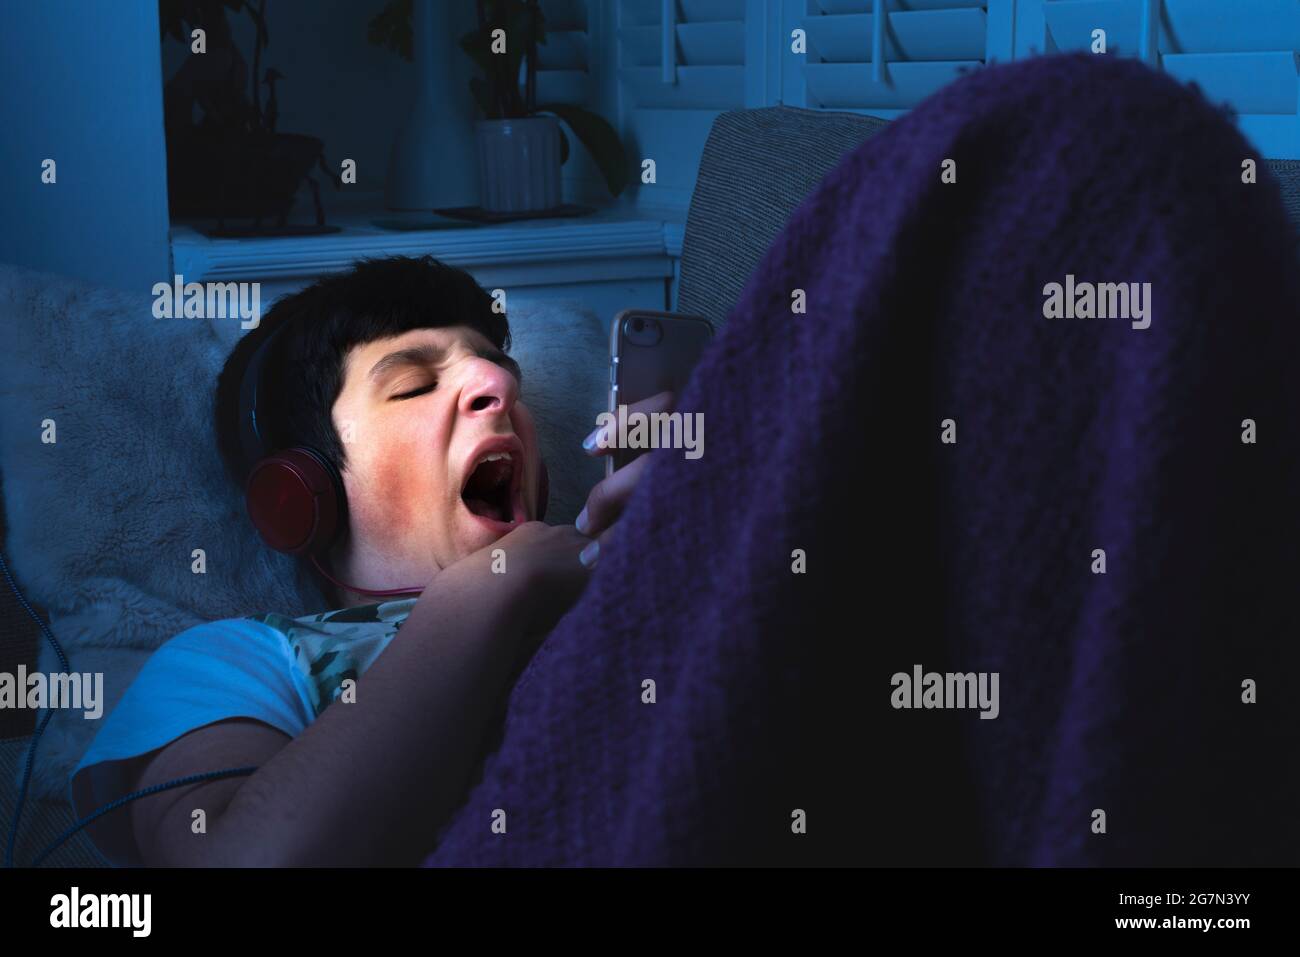 Adolescente cansado en su teléfono en cama bostking.late noche, insomnio, Reino Unido Foto de stock